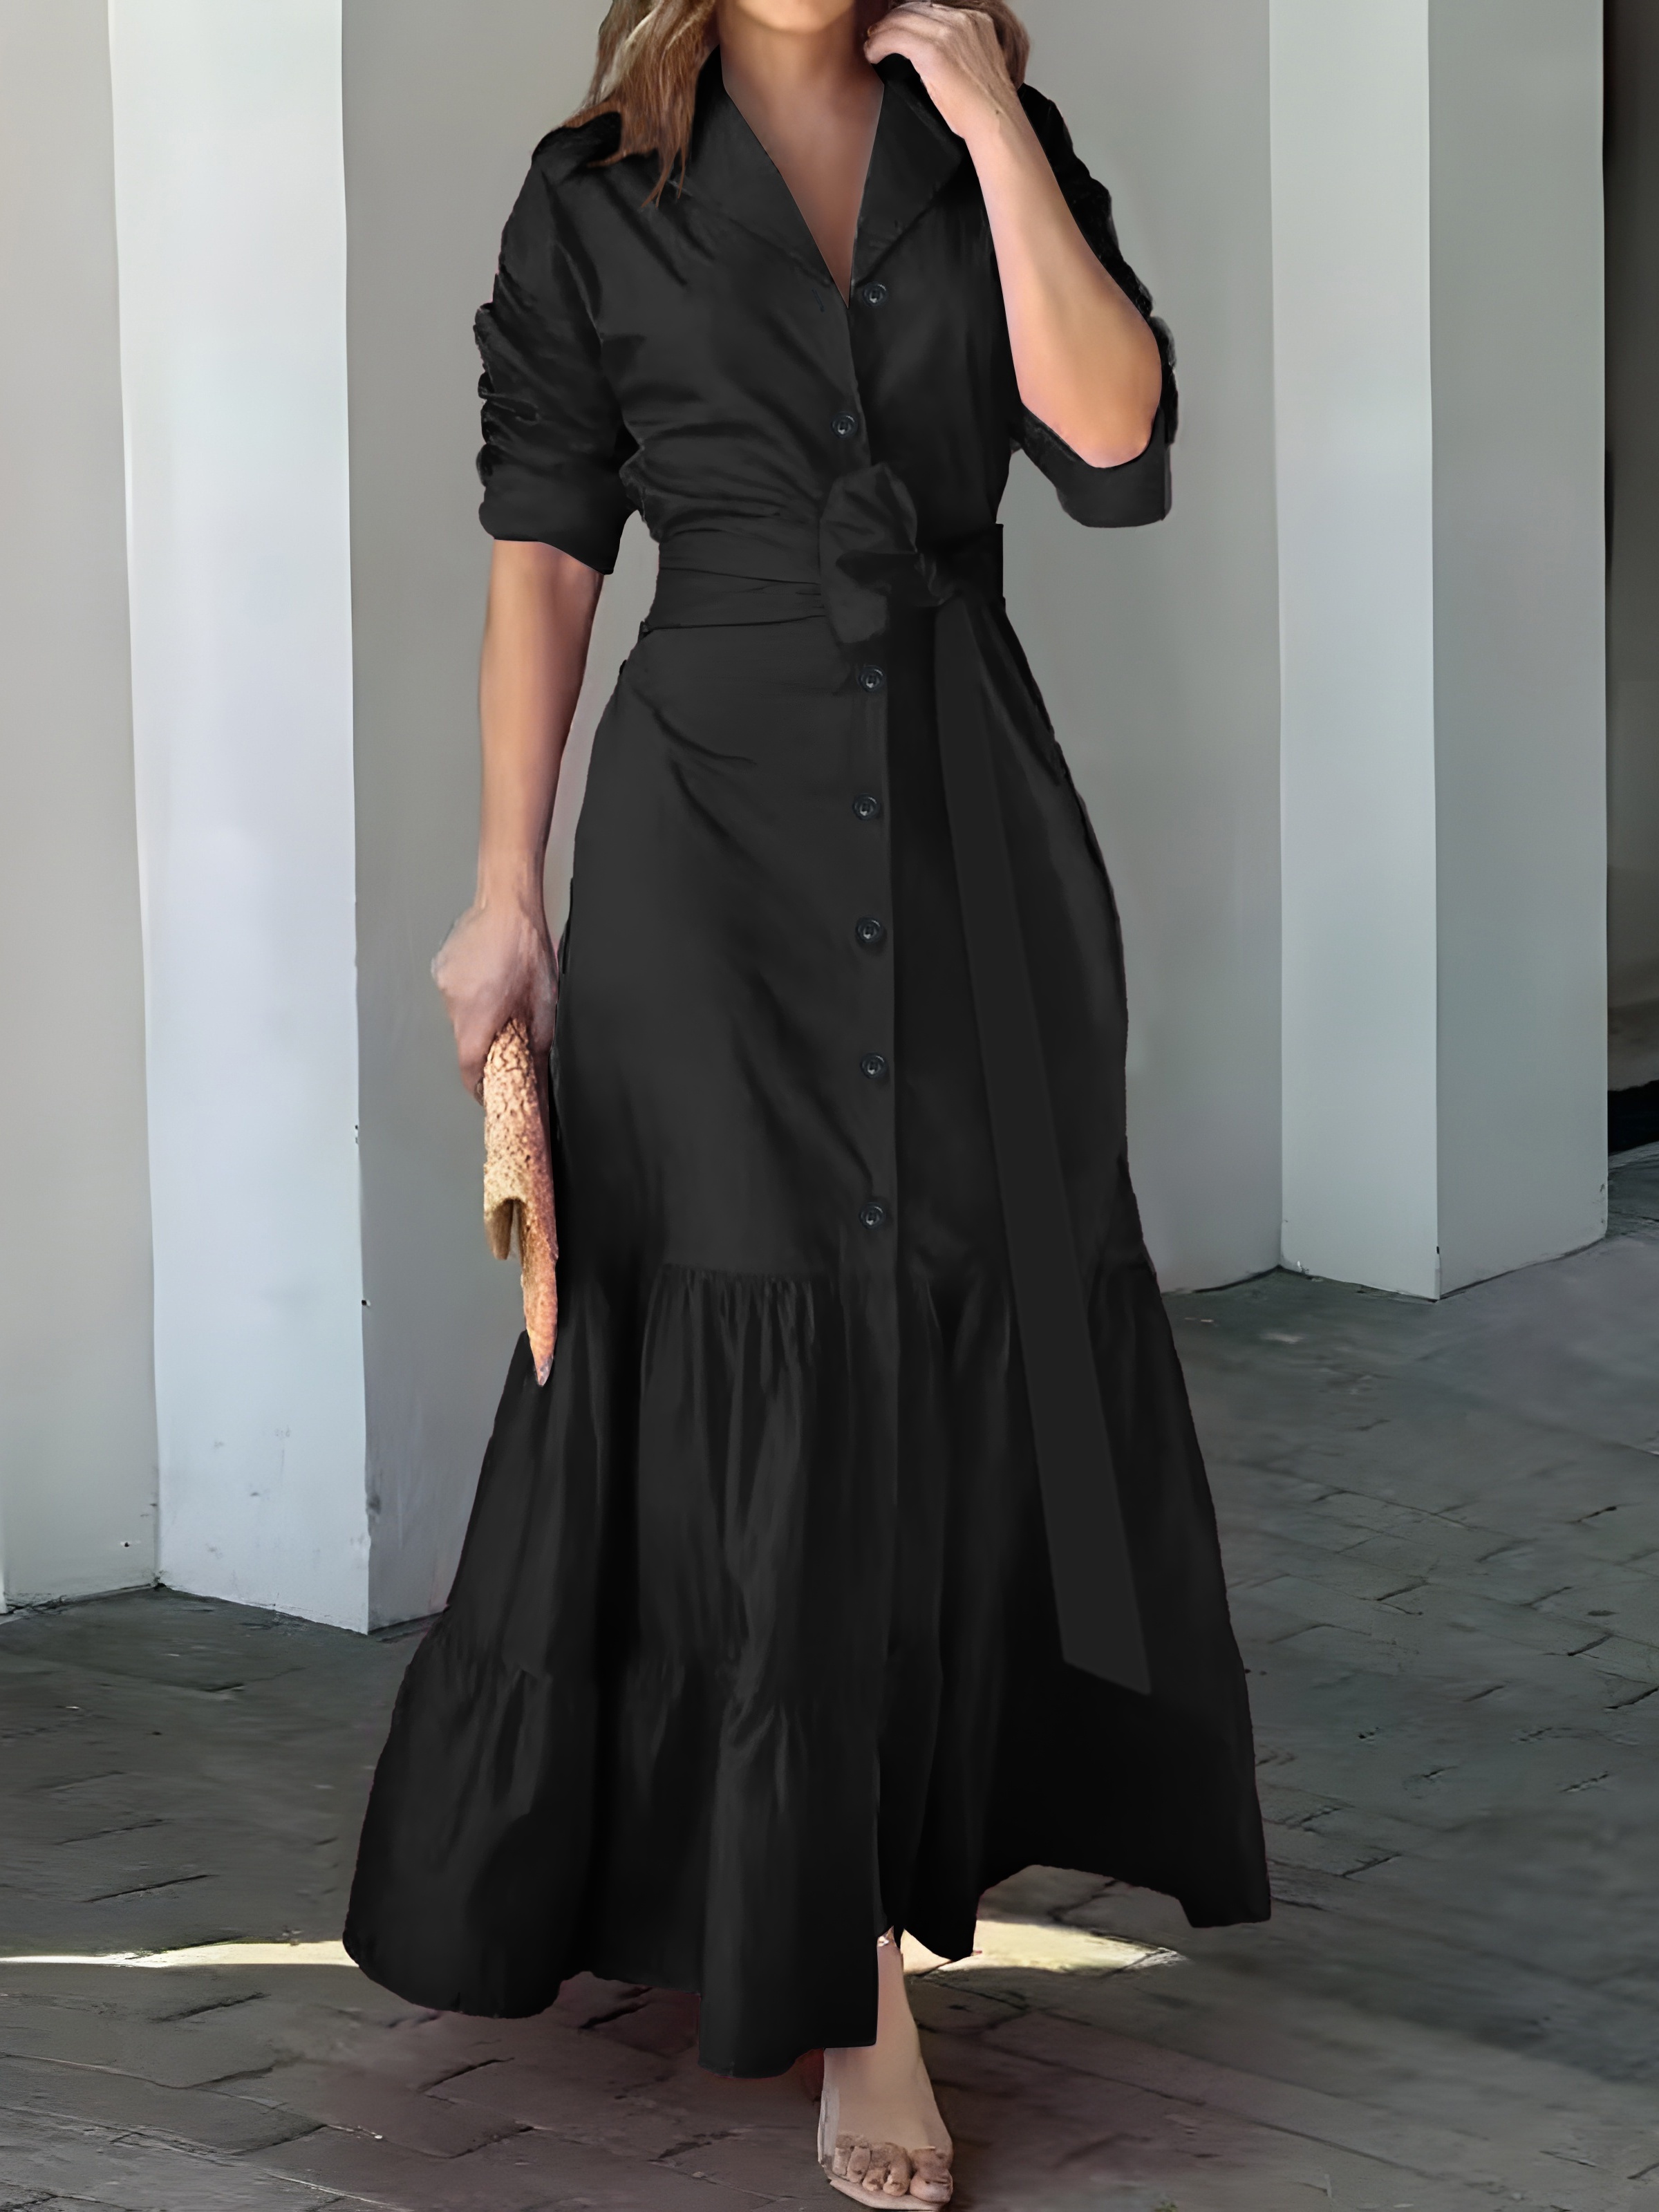 Women skims dressPrint Backless Mesh See Through Ruched Beach Bodycon Maxi  Long Dress Black